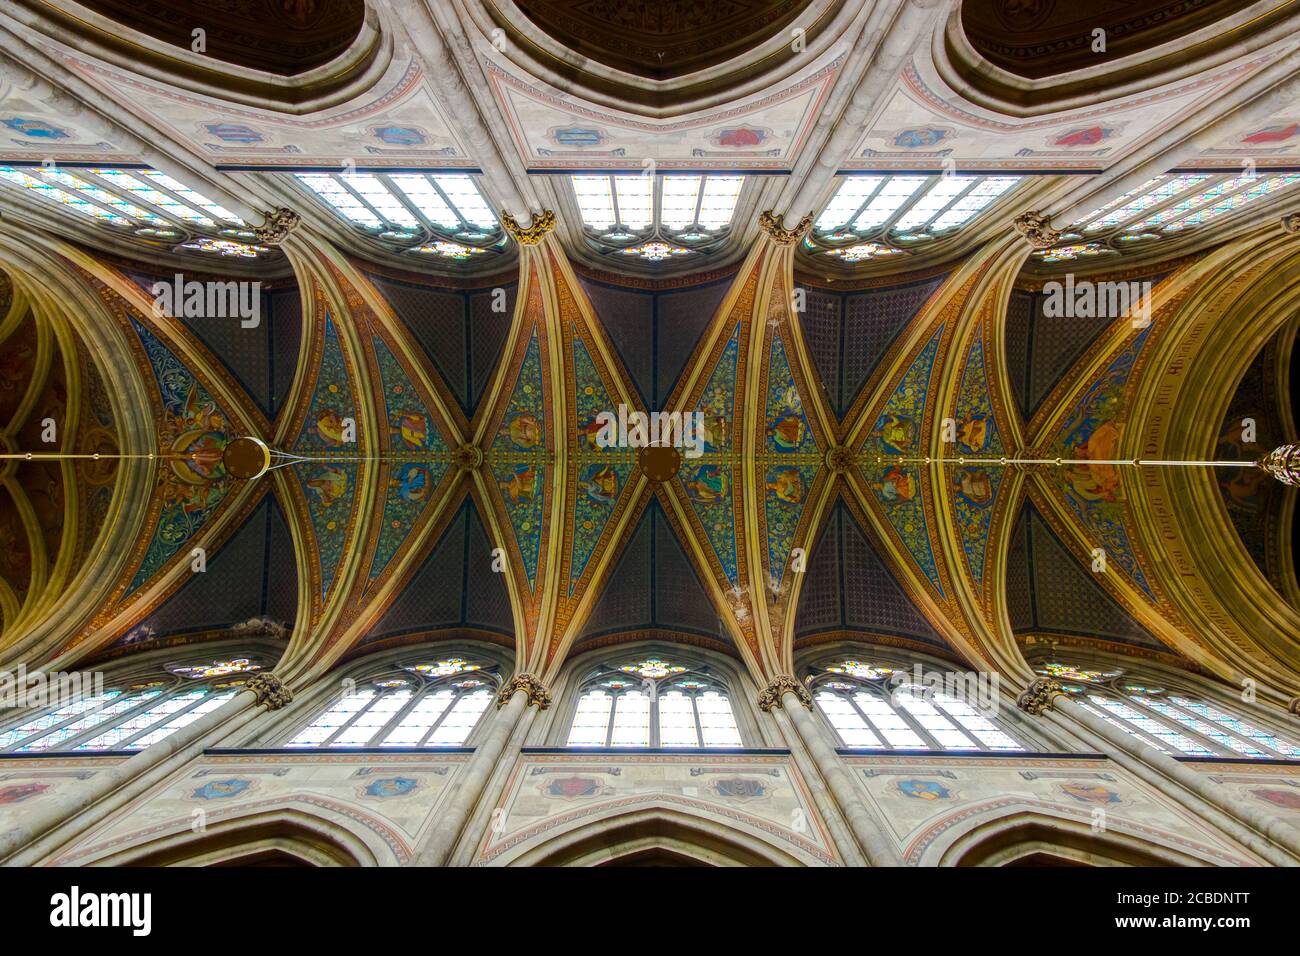 Ein Innenraum, gerader Blick auf die hohe, gewölbte, bemalte Decke der Votivkirche, Votivkirche. In Wien, Österreich. Stockfoto